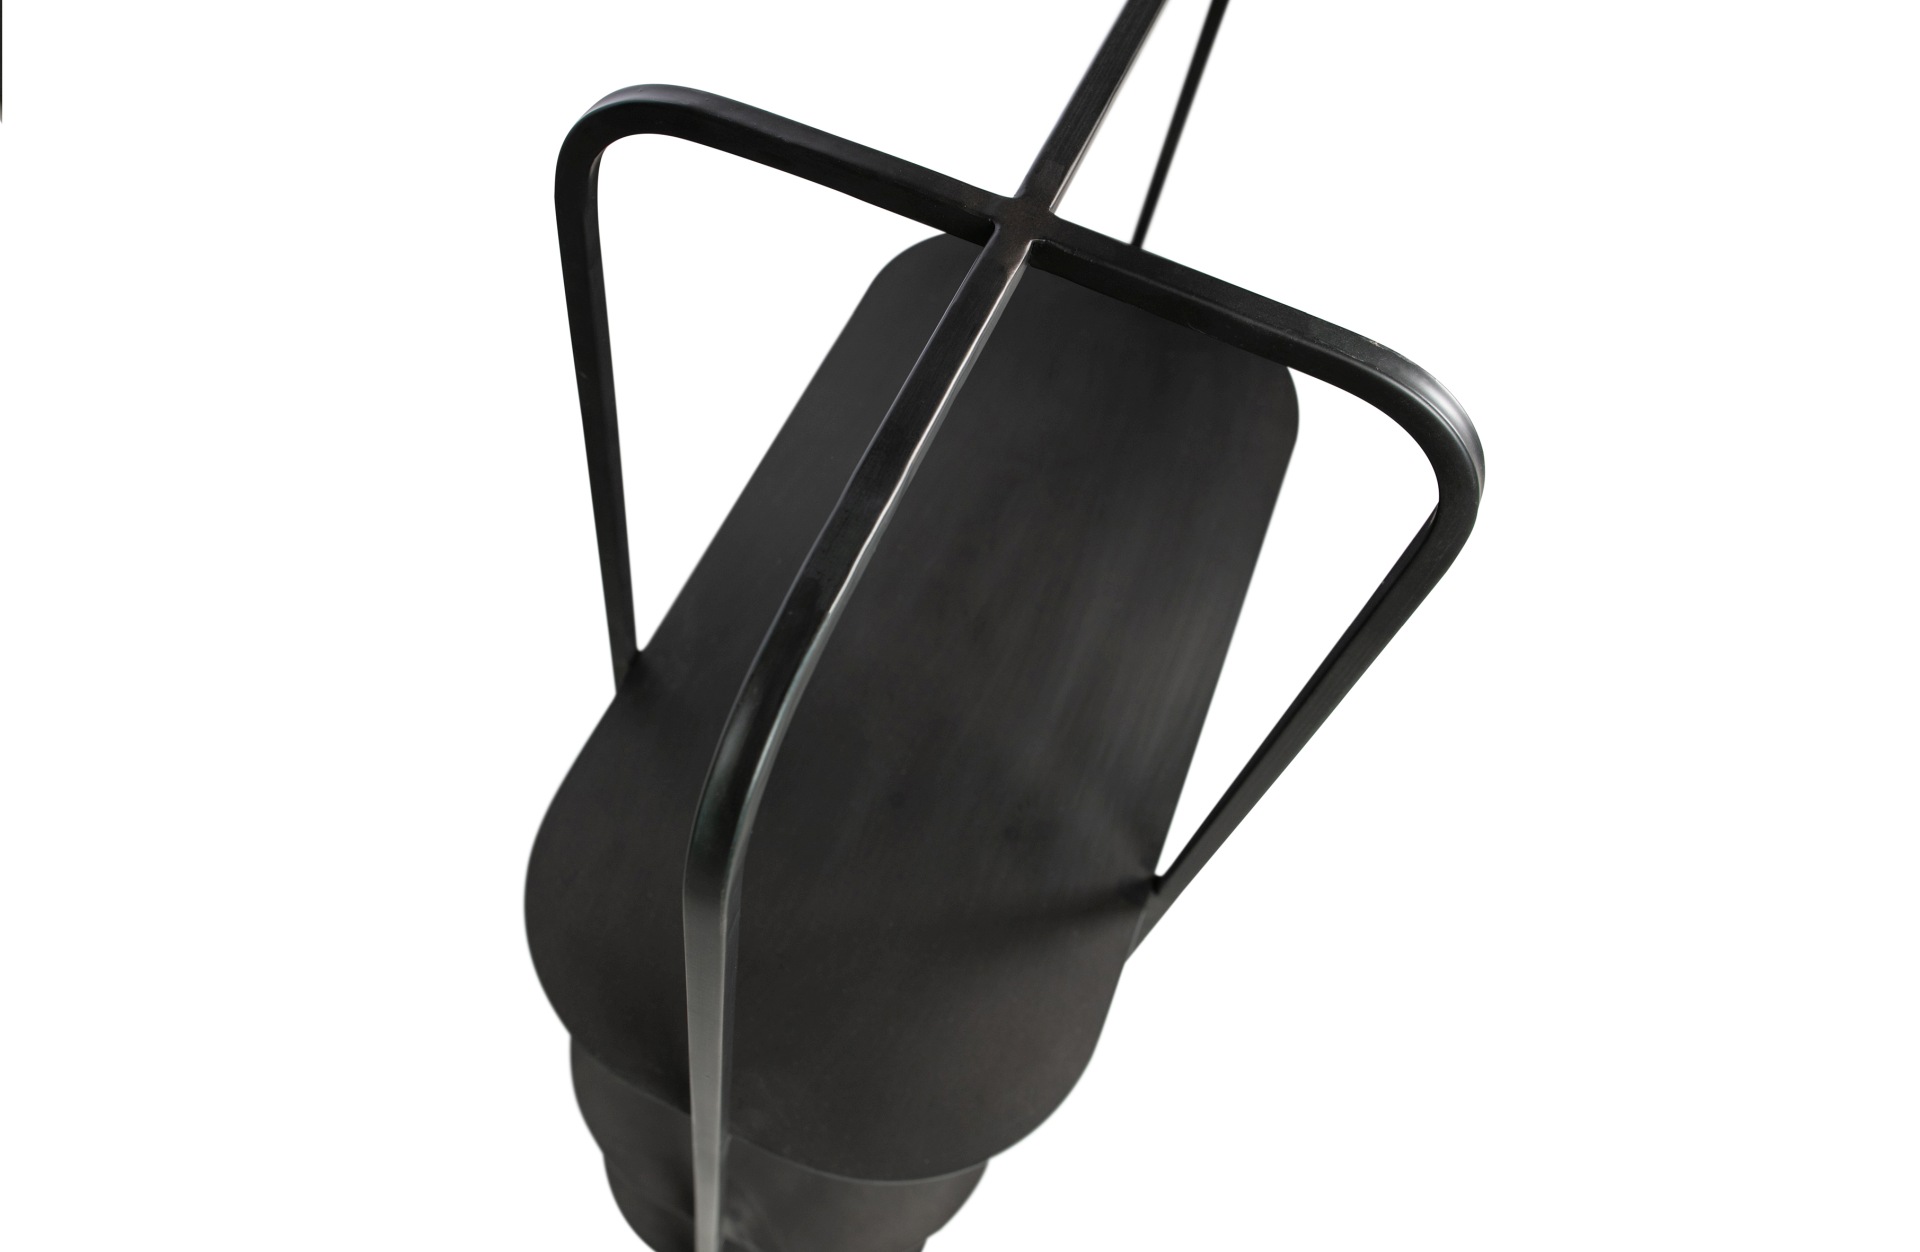 Das Regal Reina wurde aus Metall gefertigt und besitzt einen schwarzen Farbton. Das Regal hat drei Böden.